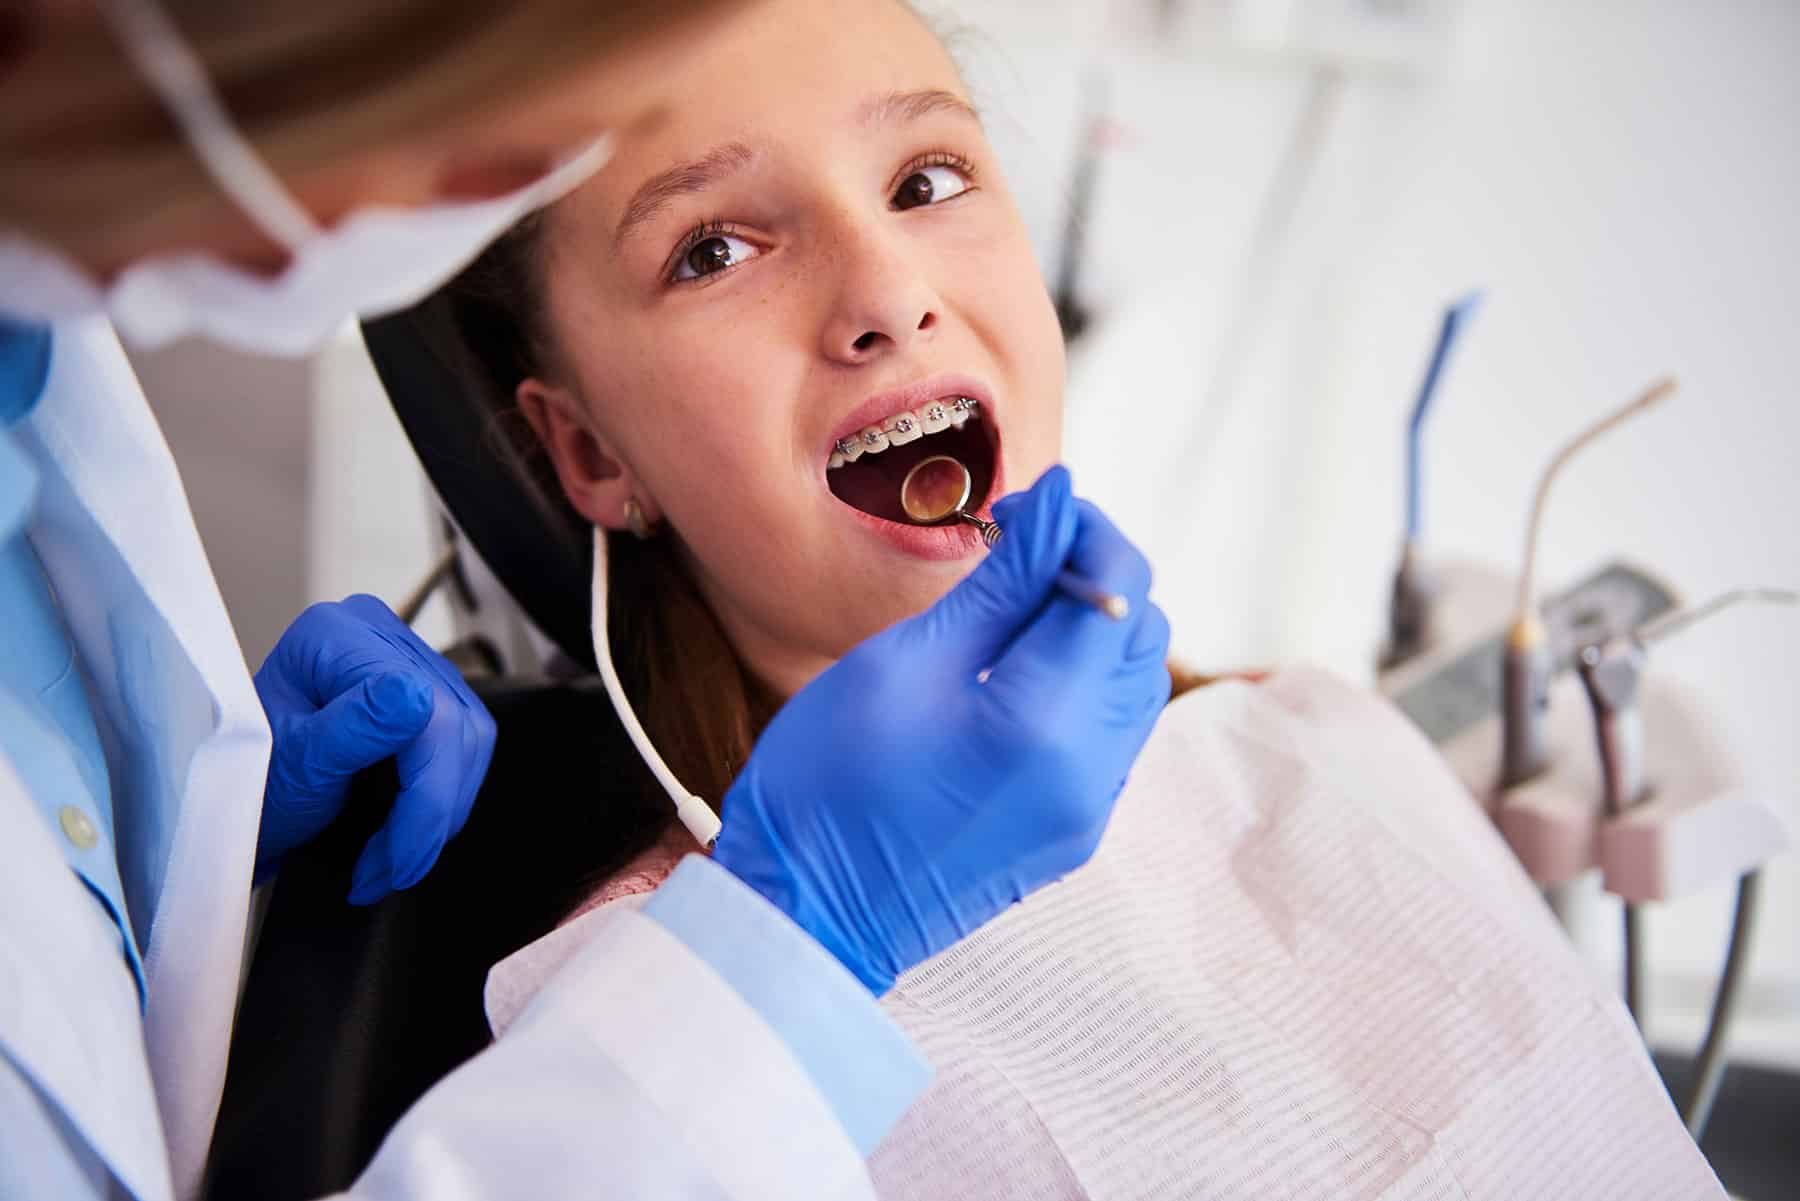 Boy with braces getting dental treatment